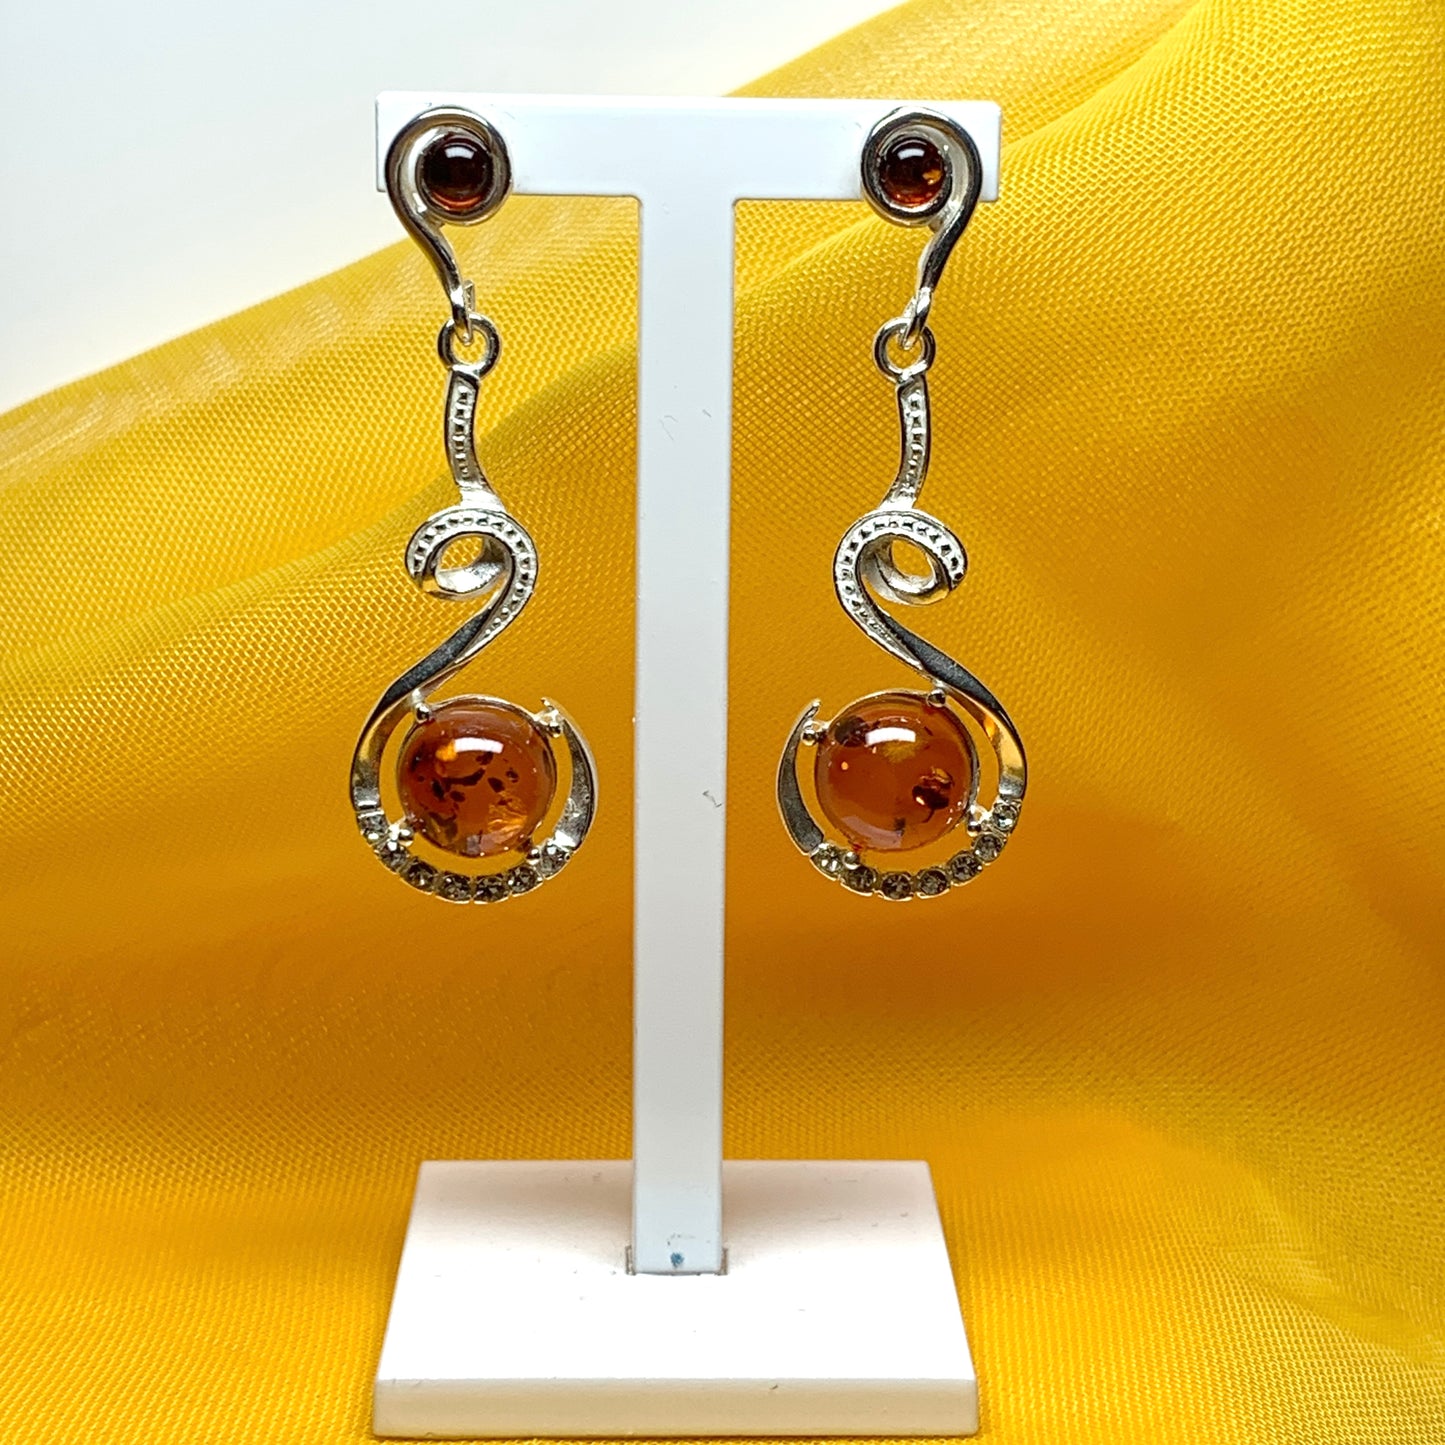 Real amber round drop earrings sterling silver fancy swirl